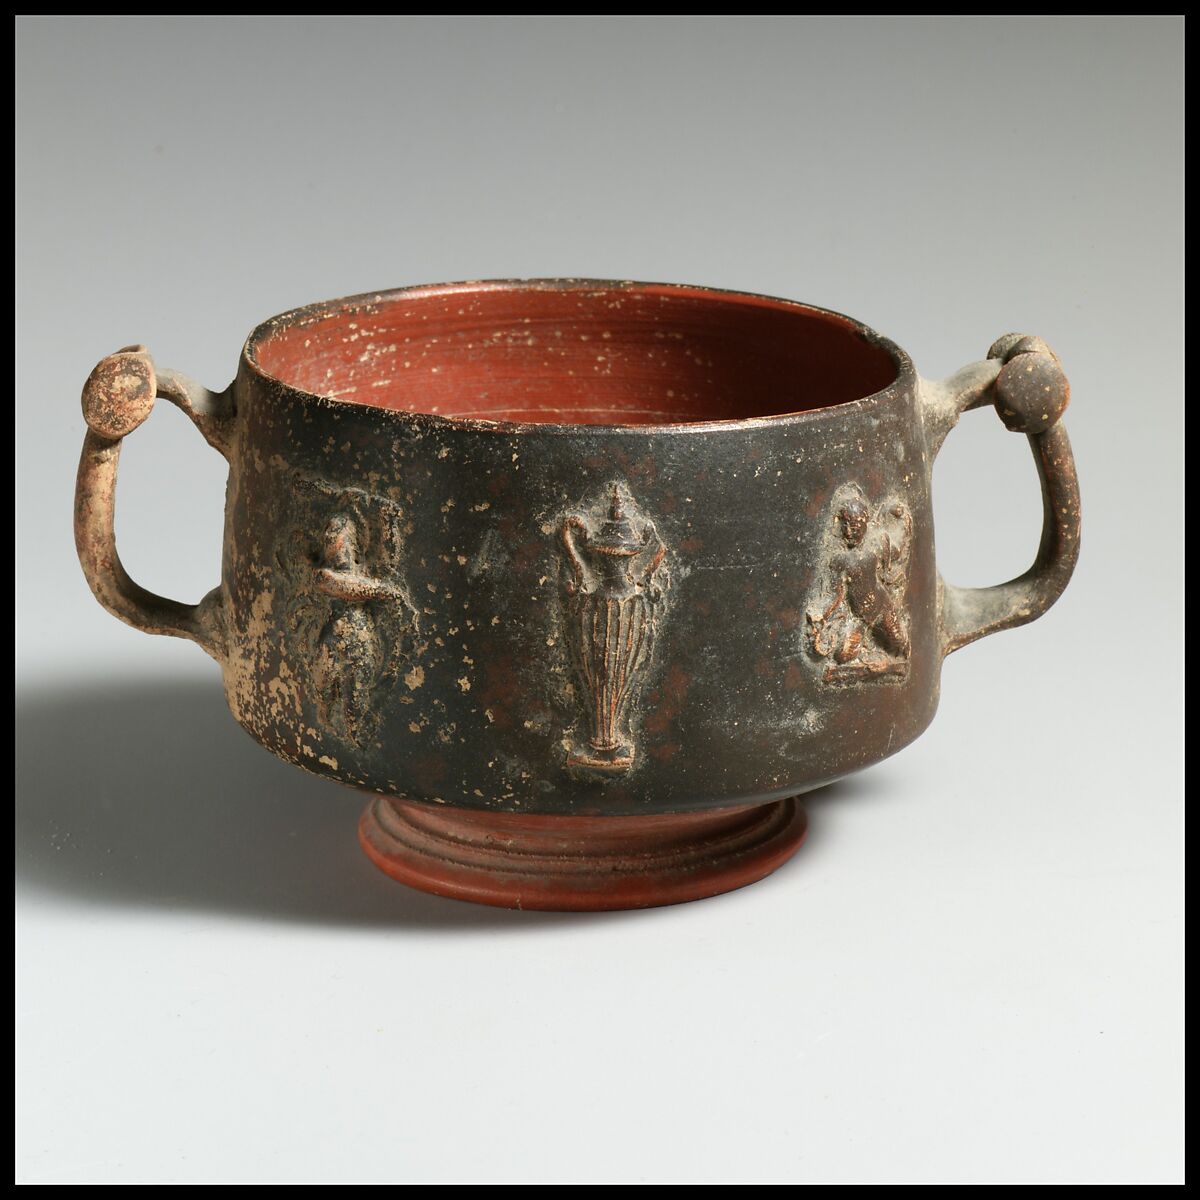 Terracotta cup with appliqués, Terracotta, Greek, Pergamene